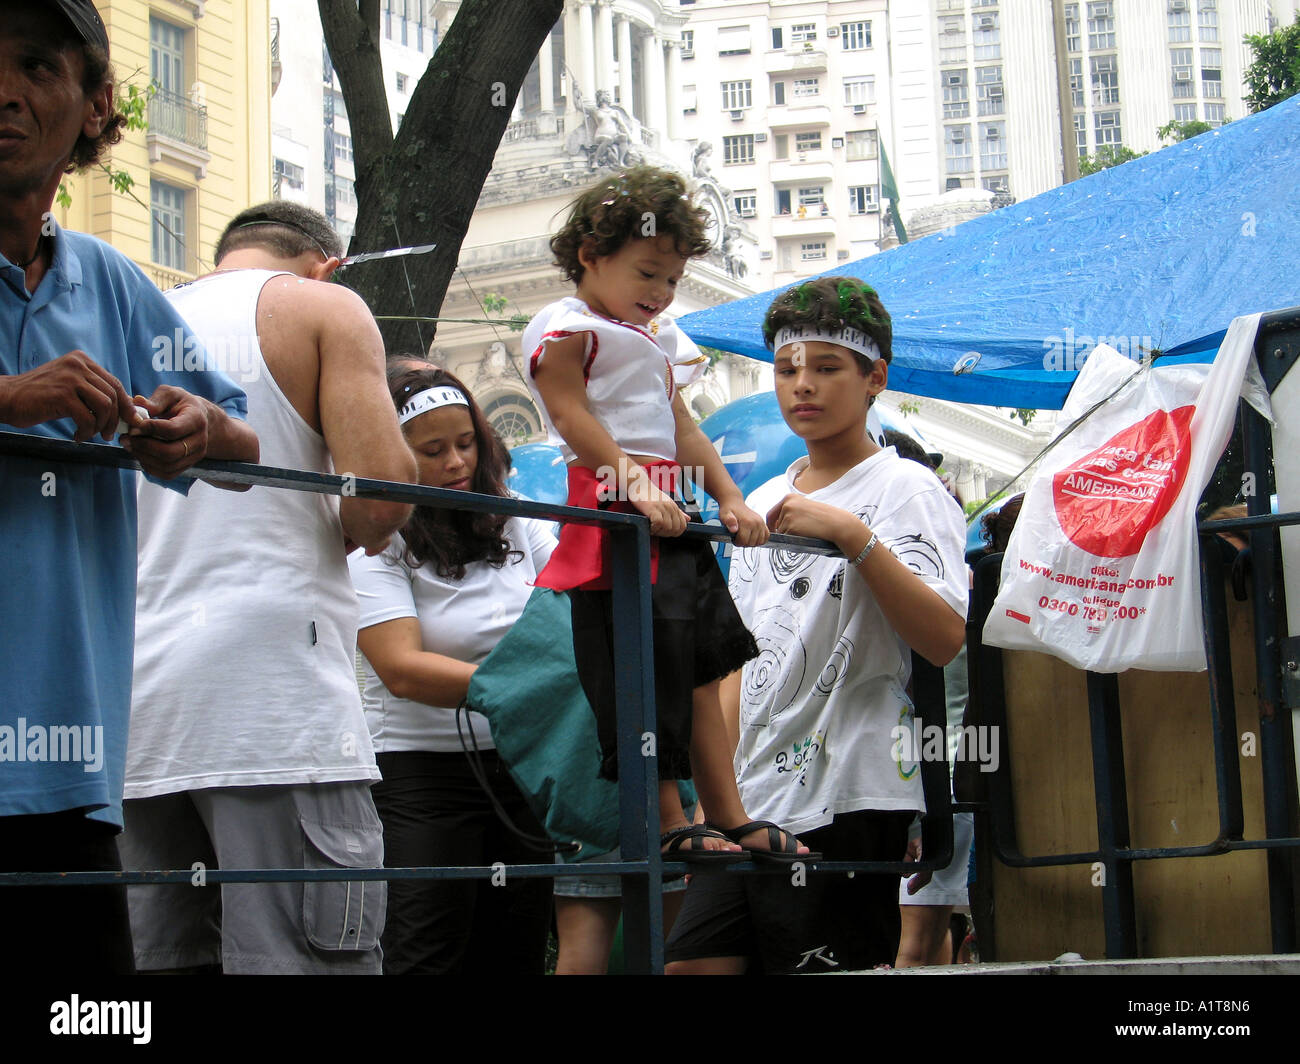 Celebrating Carnival in Rio de Janeiro, Brazil Stock Photo